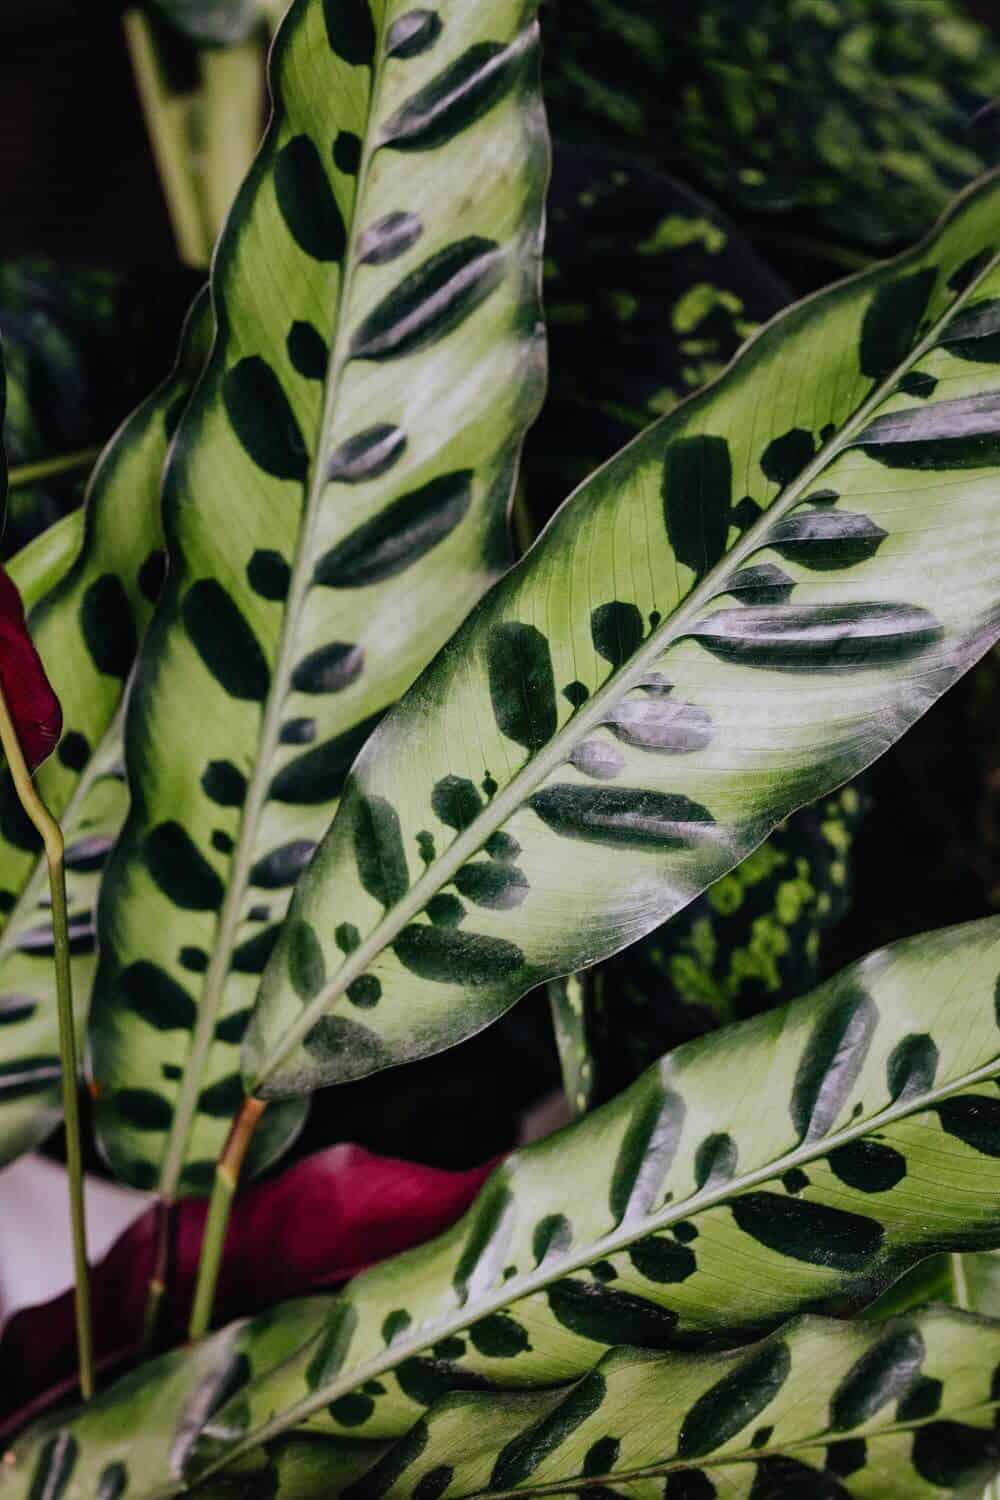 Calathea leaves